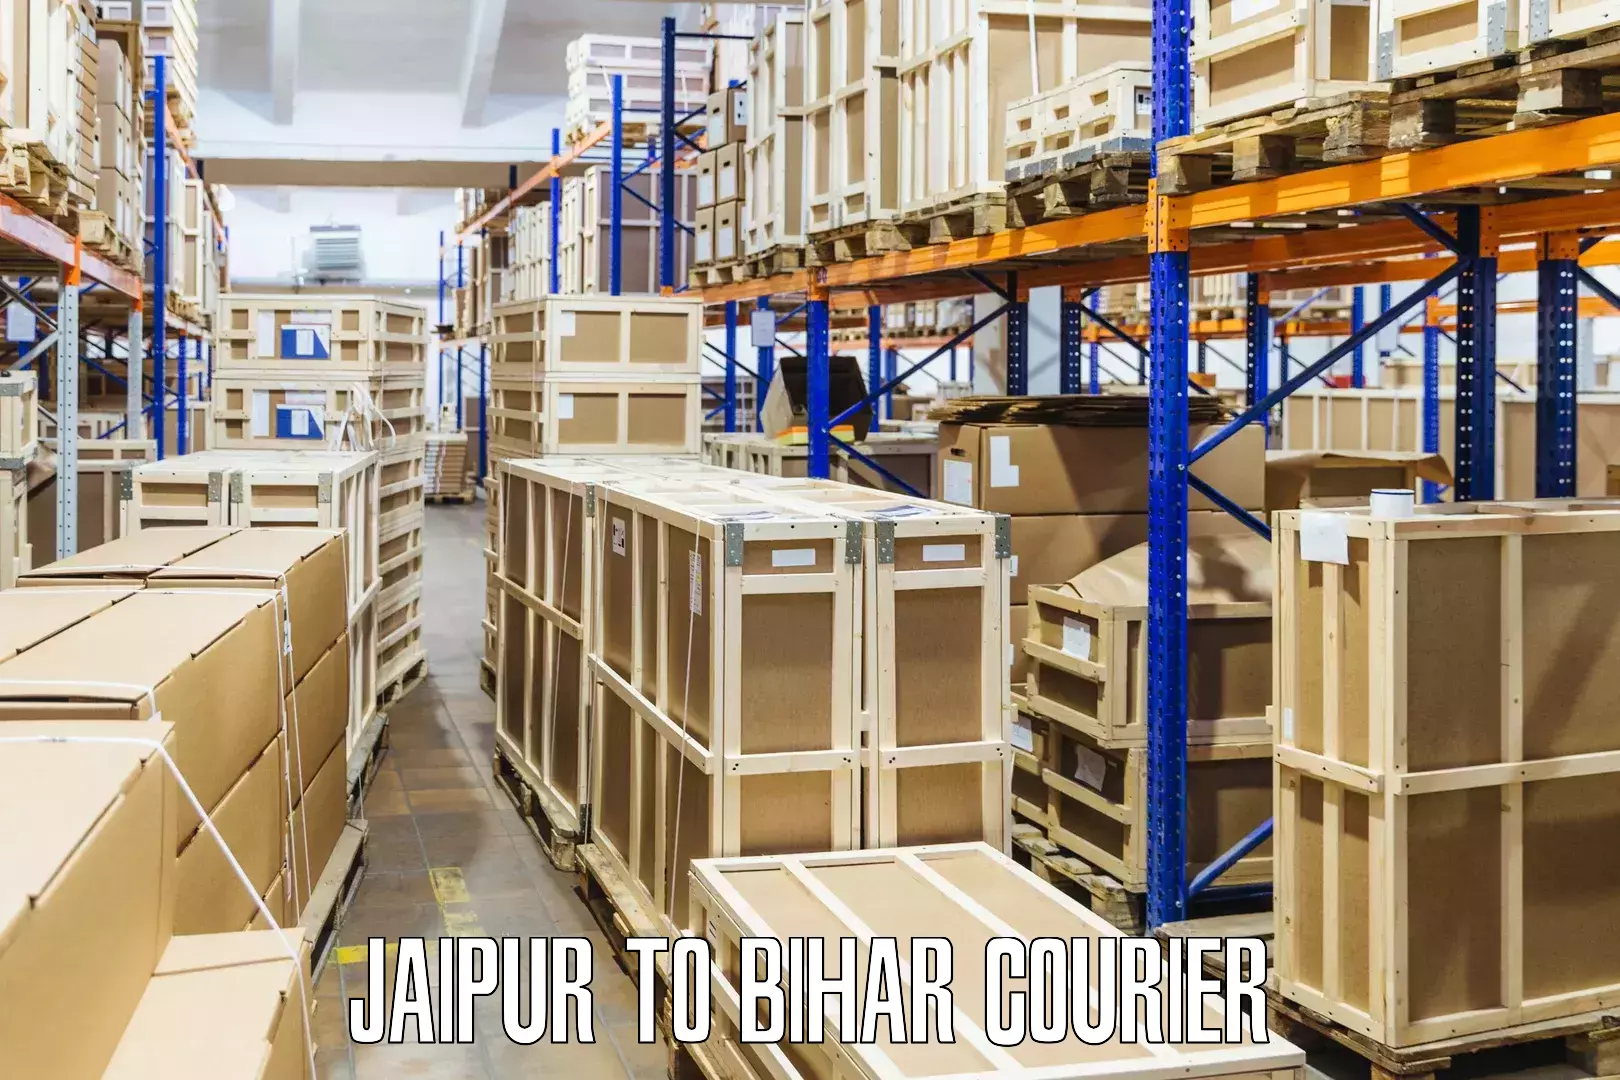 Flexible parcel services Jaipur to Mirganj